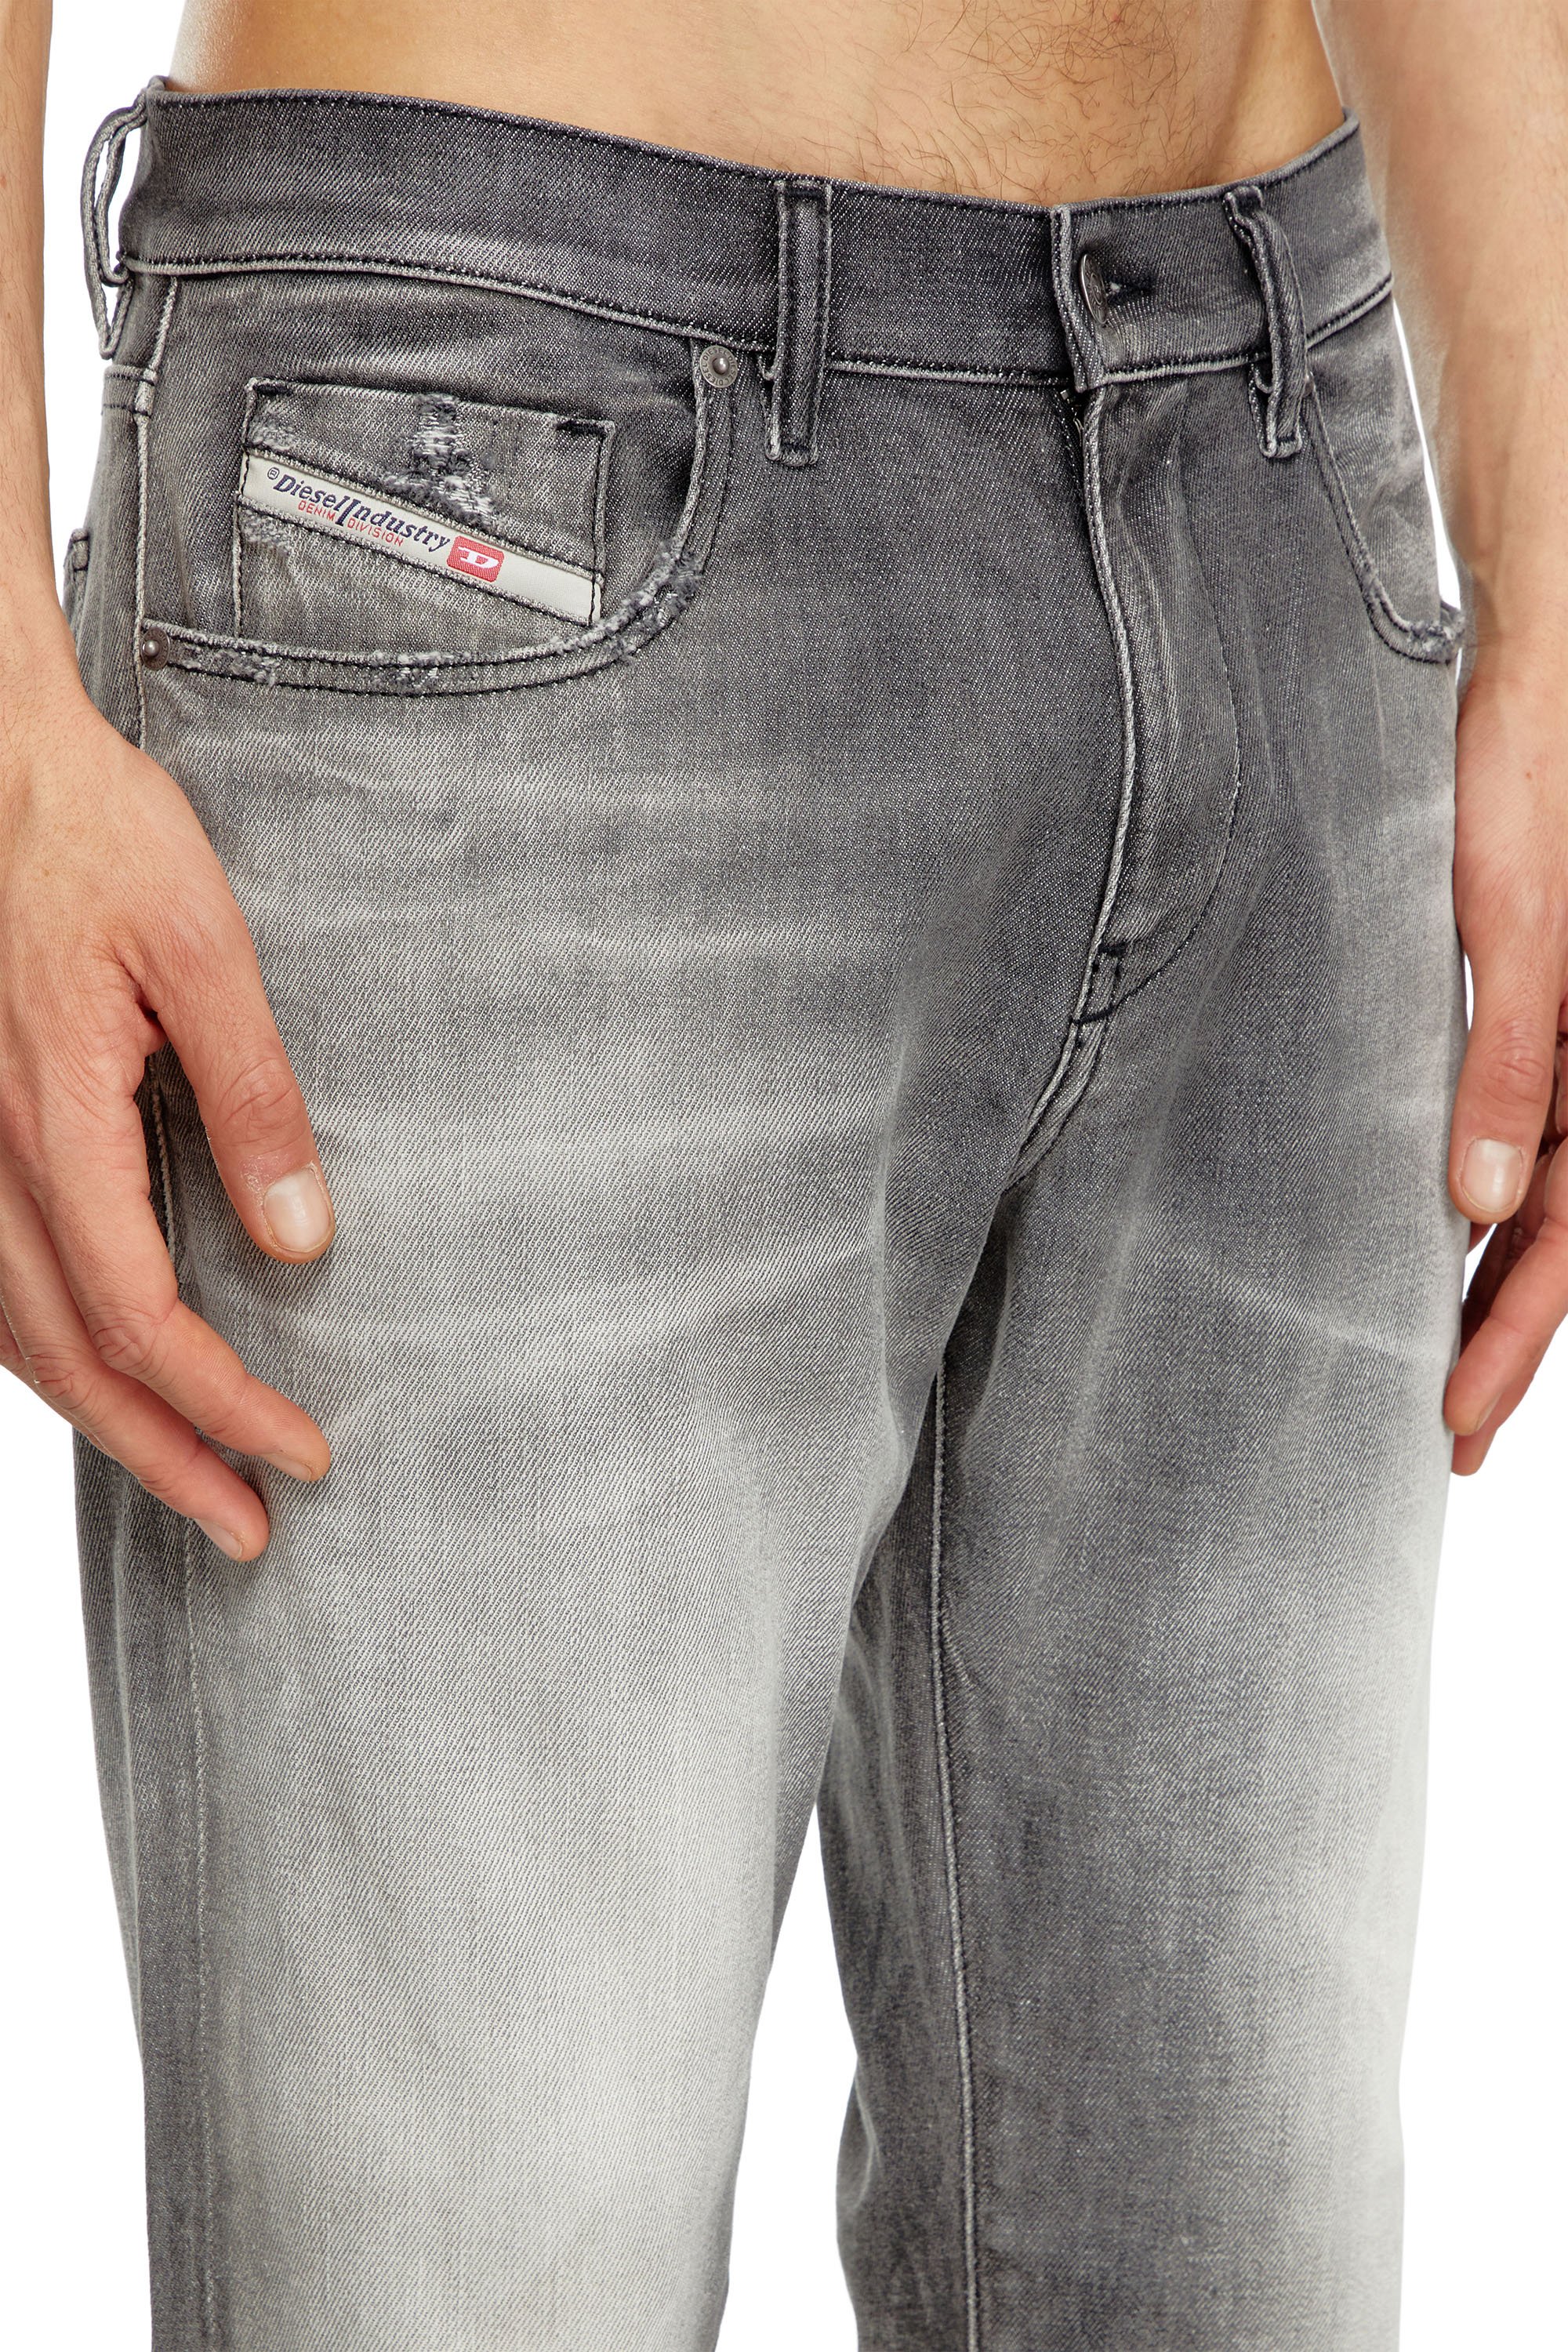 Diesel - Slim Jeans 2019 D-Strukt 09J58, Hombre Slim Jeans - 2019 D-Strukt in Gris - Image 5